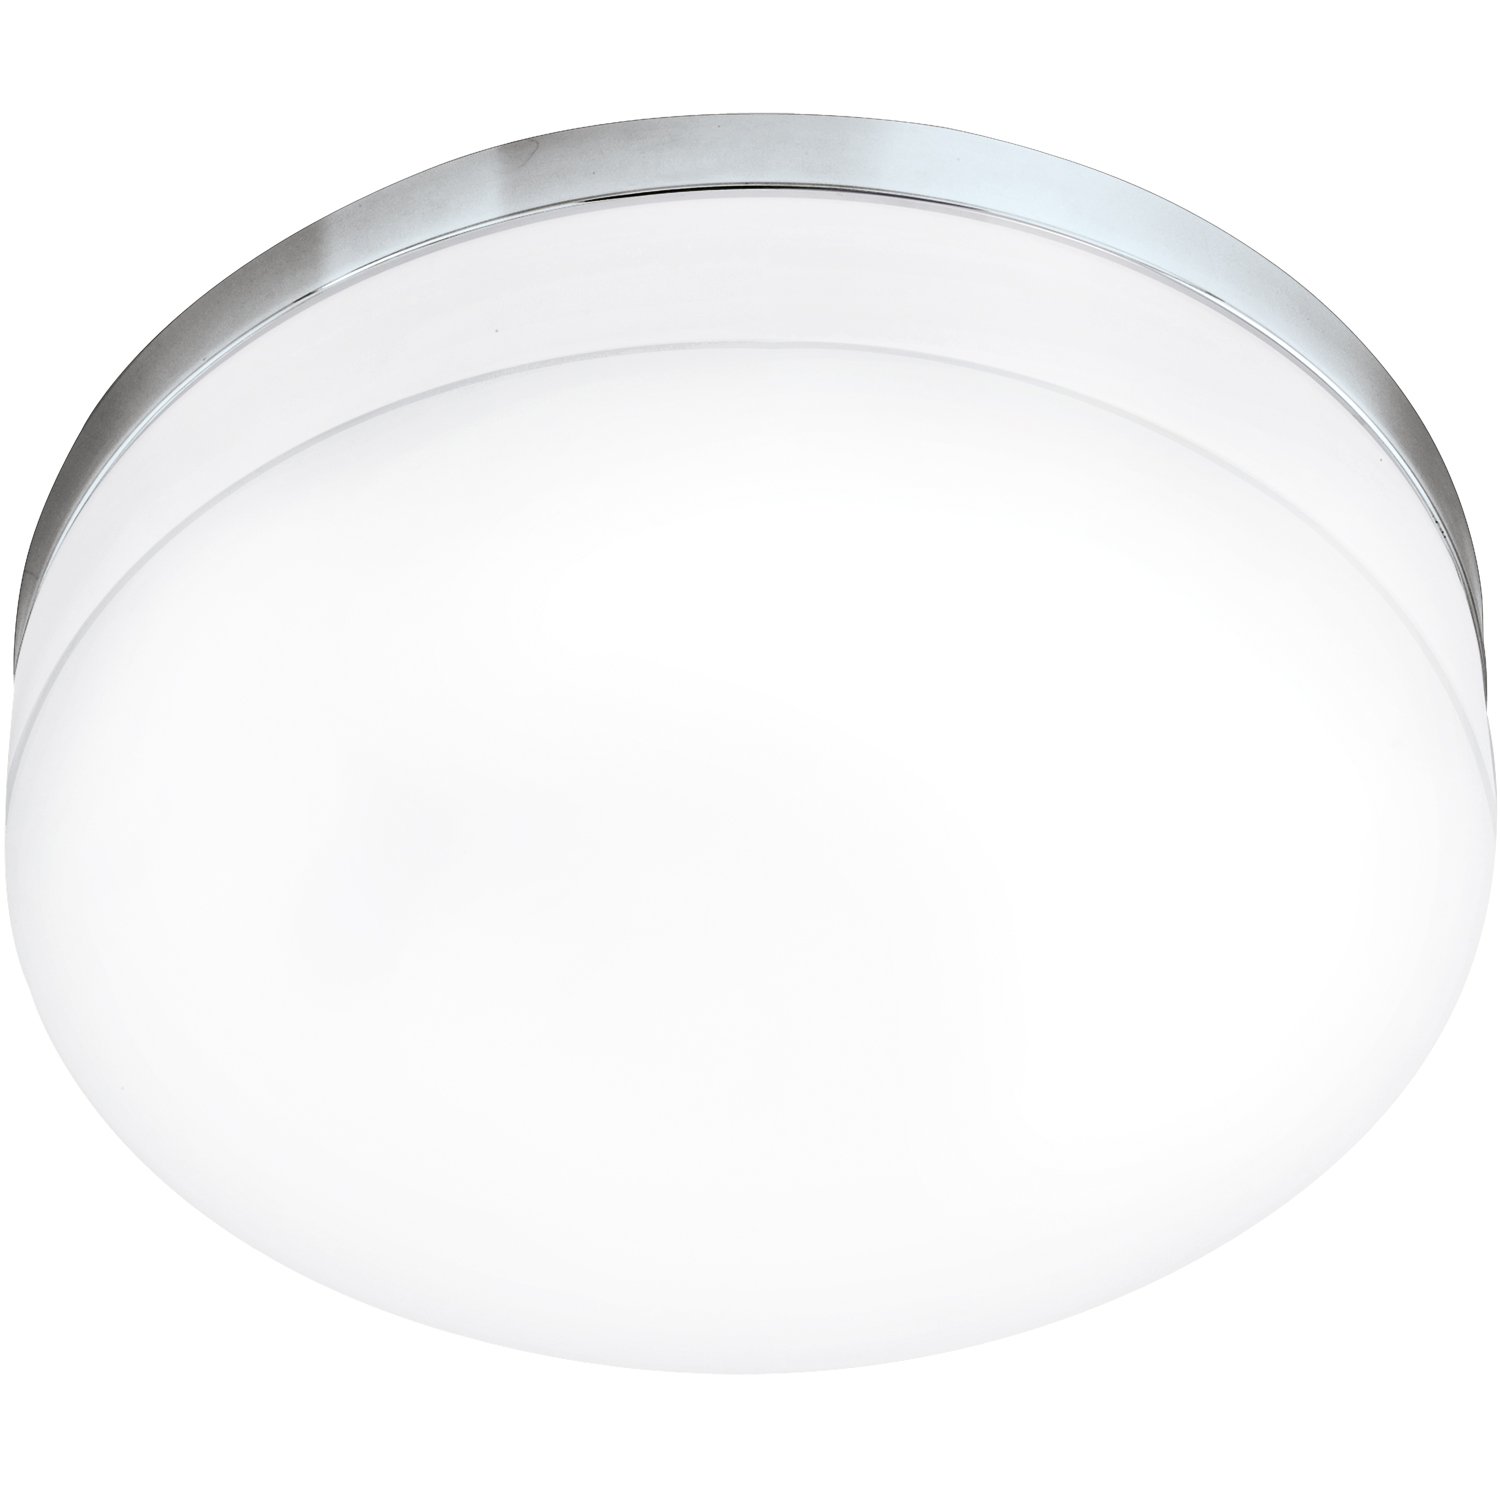 Plafon Eglo Lora 95002 lampa sufitowa 1x24W LED chrom/biały